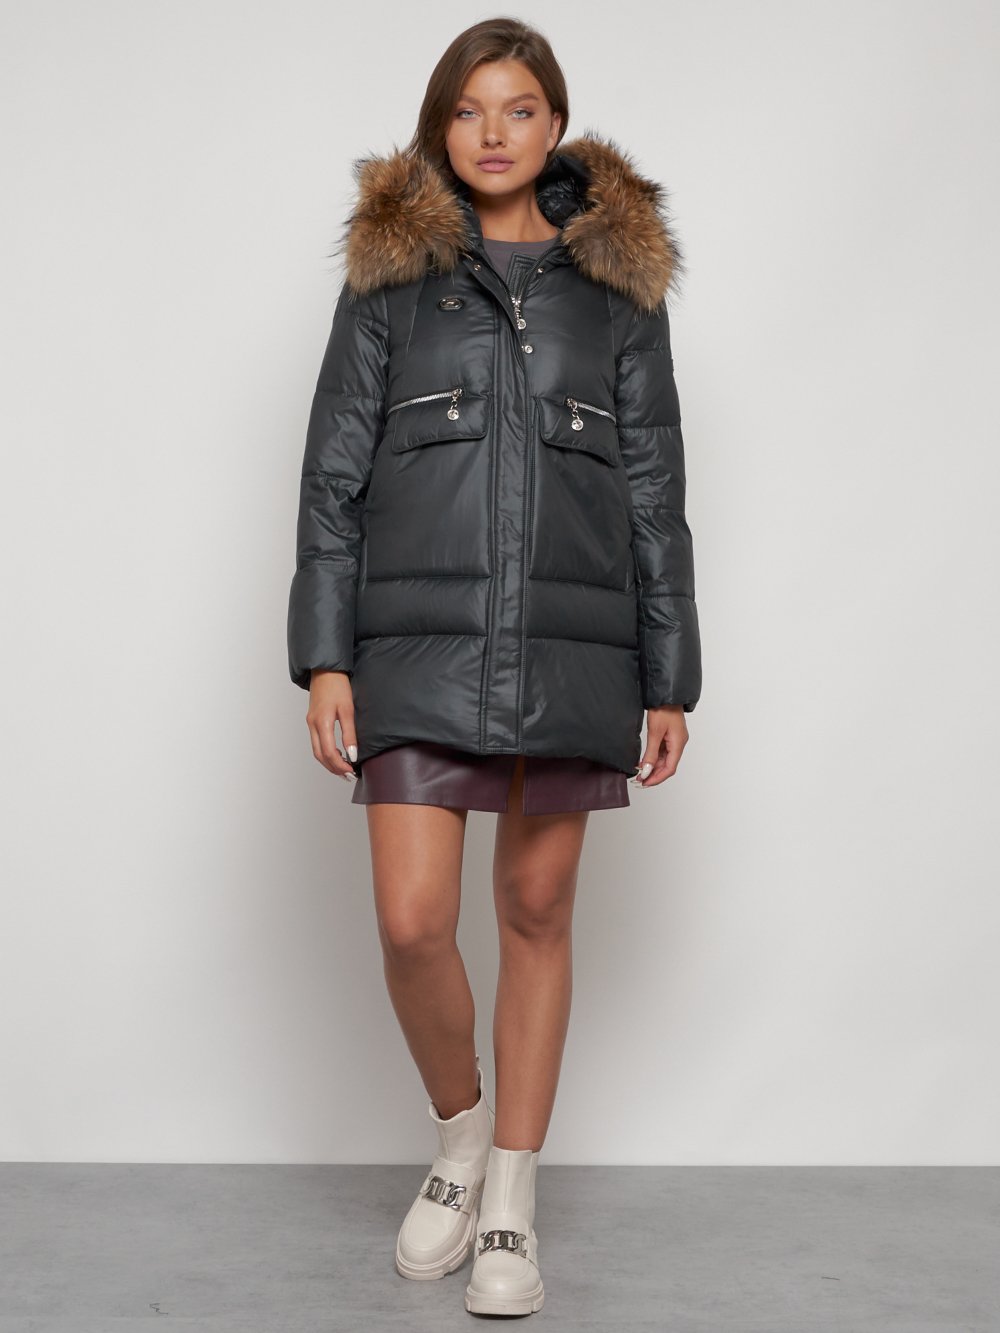 Купить куртку женскую зимнюю оптом от производителя недорого в Москве 132298TC 1